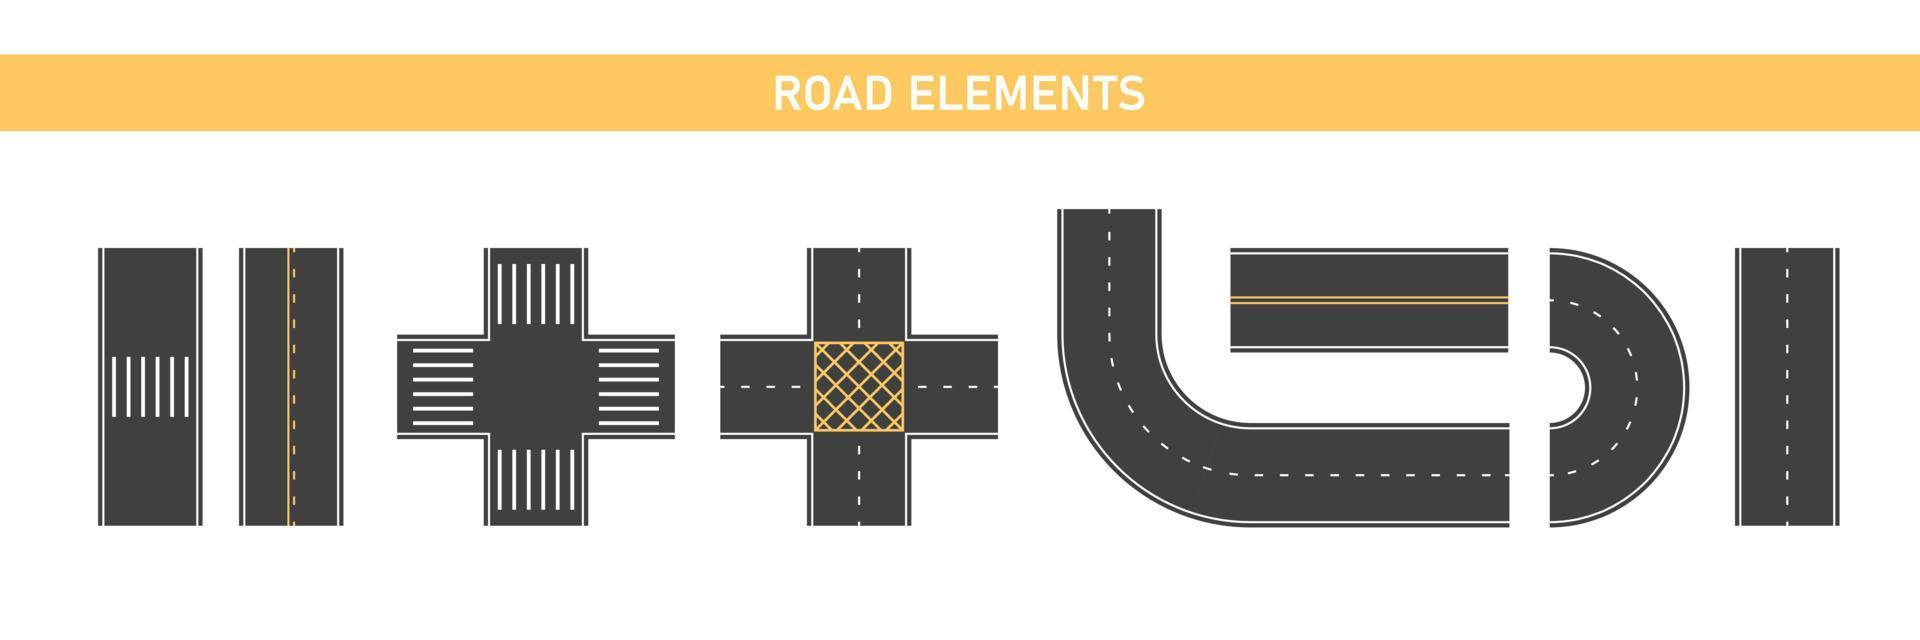 segmentos de carretera, juego de piezas. elementos de carretera, constructor de vías. paso de peatones urbano, carretera y cruce de caminos. vector